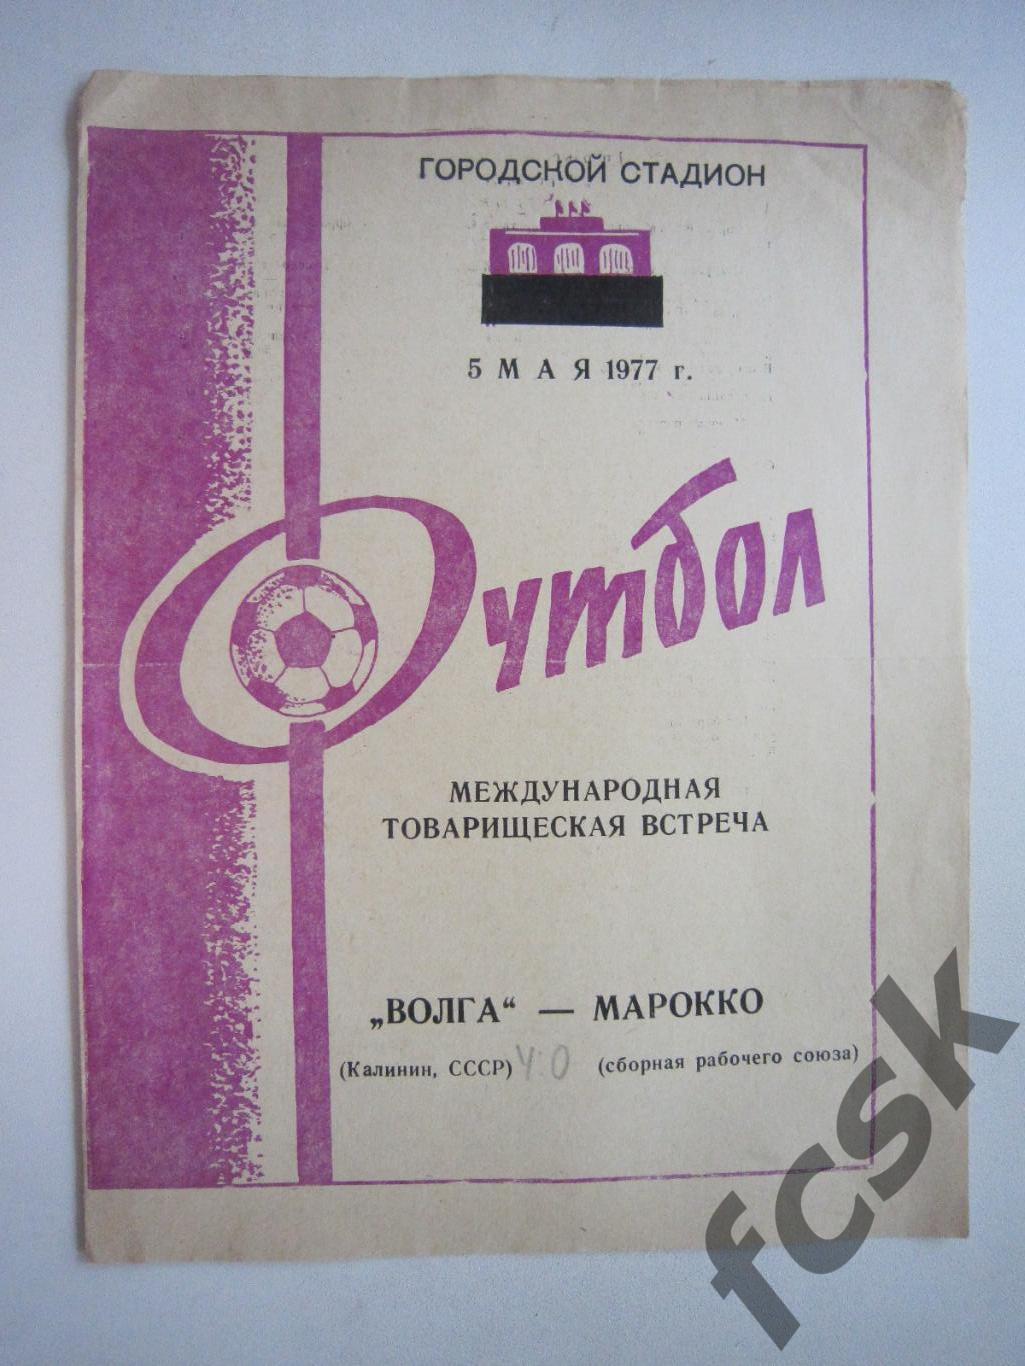 Волга Калинин - Сборная рабочего союза Марокко Международная встреча 1977 (и)